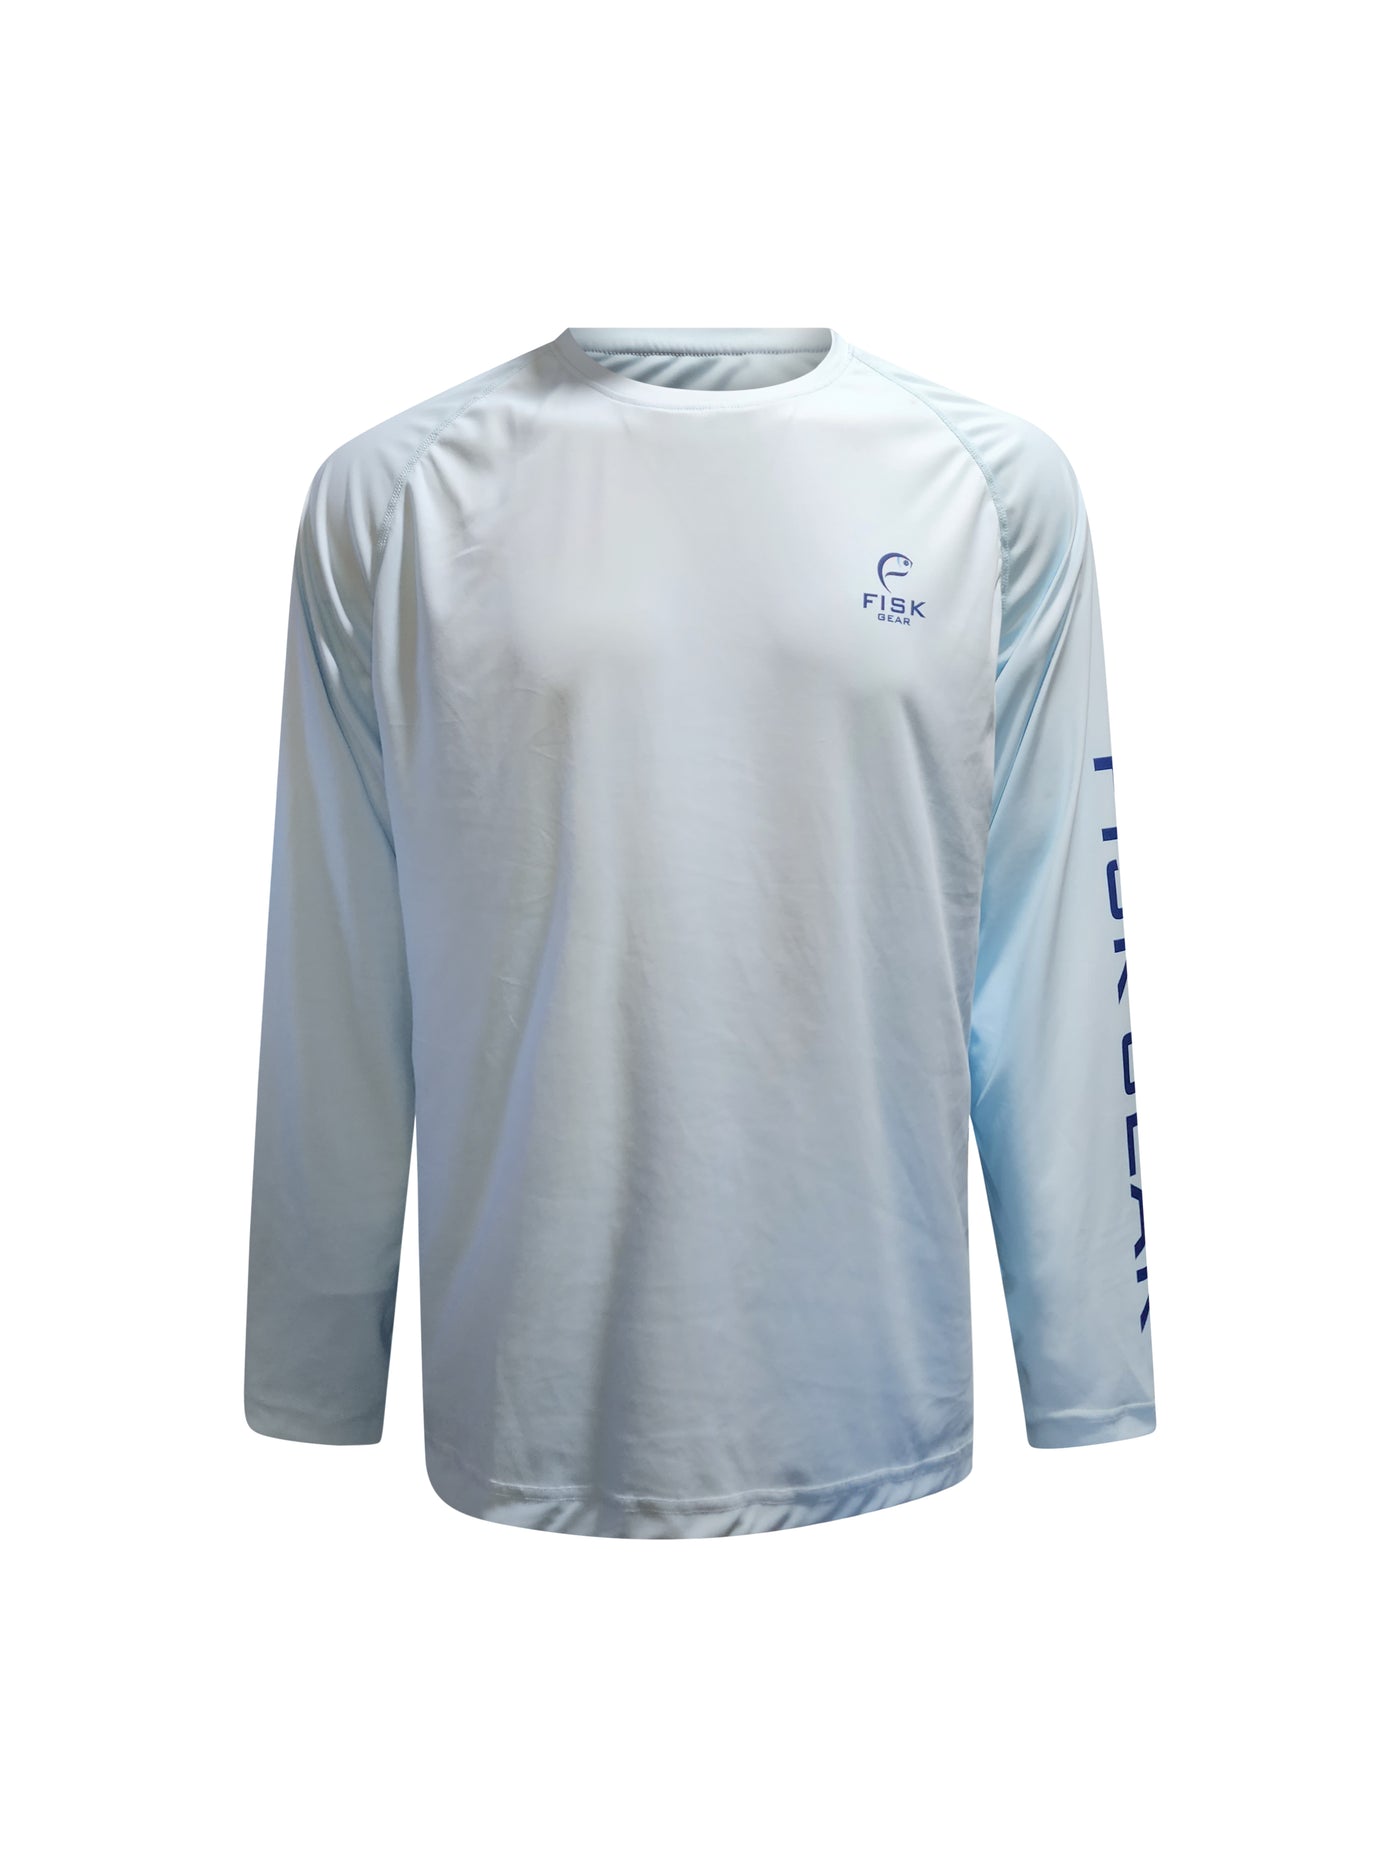 GetUSCart- BALEAF Men's Long Sleeve Logo Fishing Shirts UPF 50+